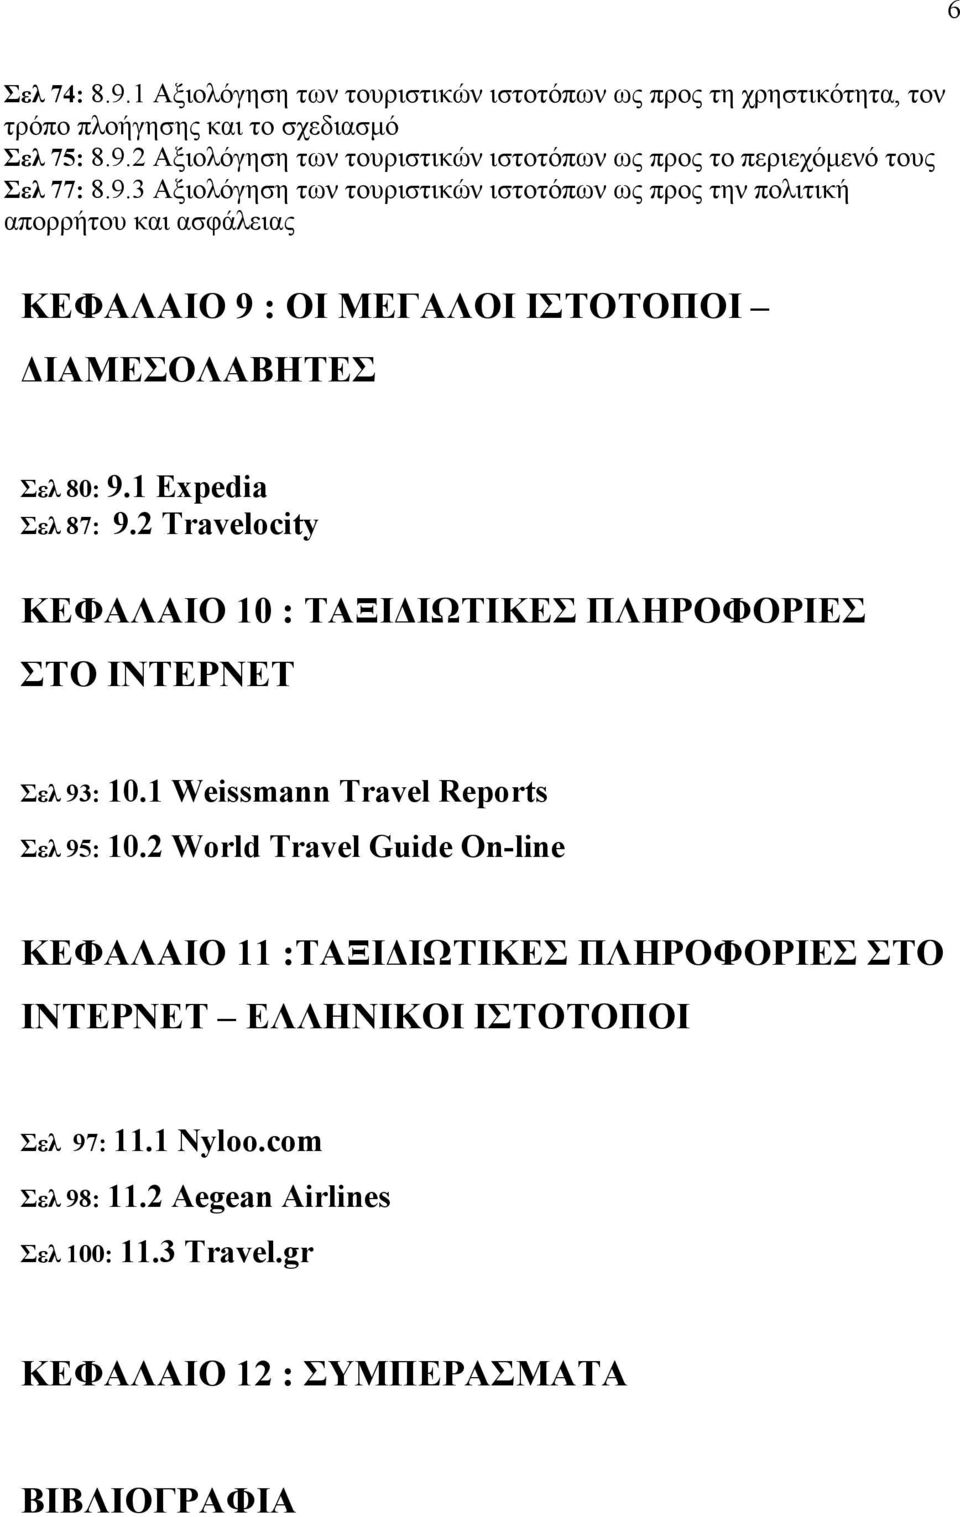 2 Travelocity ΚΕΦΑΛΑΙΟ 10 : ΤΑΞΙ ΙΩΤΙΚΕΣ ΠΛΗΡΟΦΟΡΙΕΣ ΣΤΟ ΙΝΤΕΡΝΕΤ Σελ 93: 10.1 Weissmann Travel Reports Σελ 95: 10.